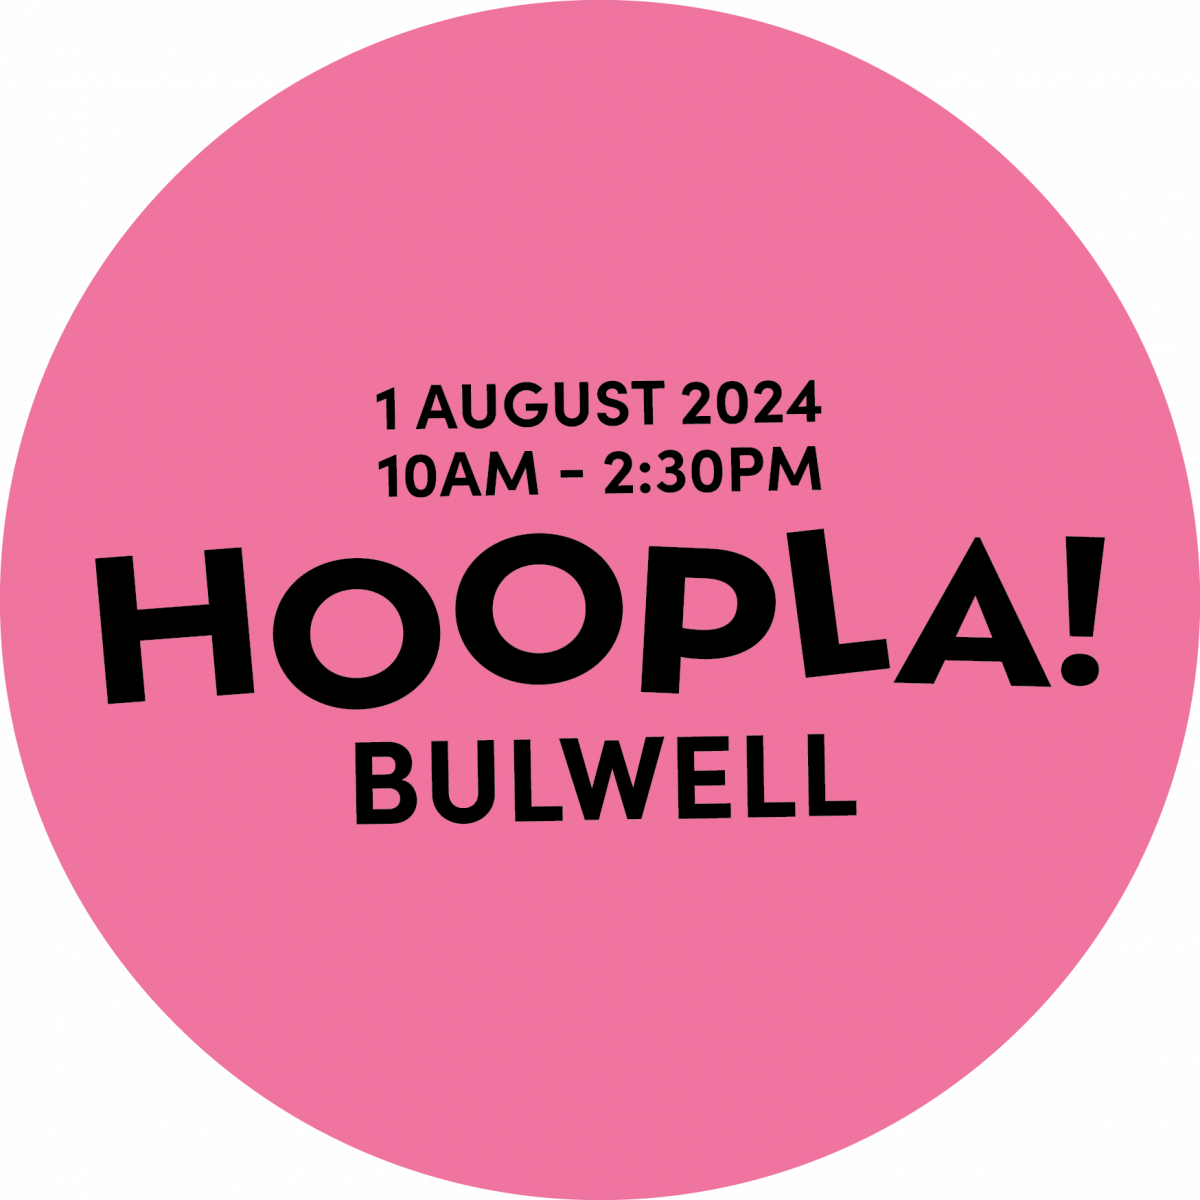 Hoopla! Bulwell